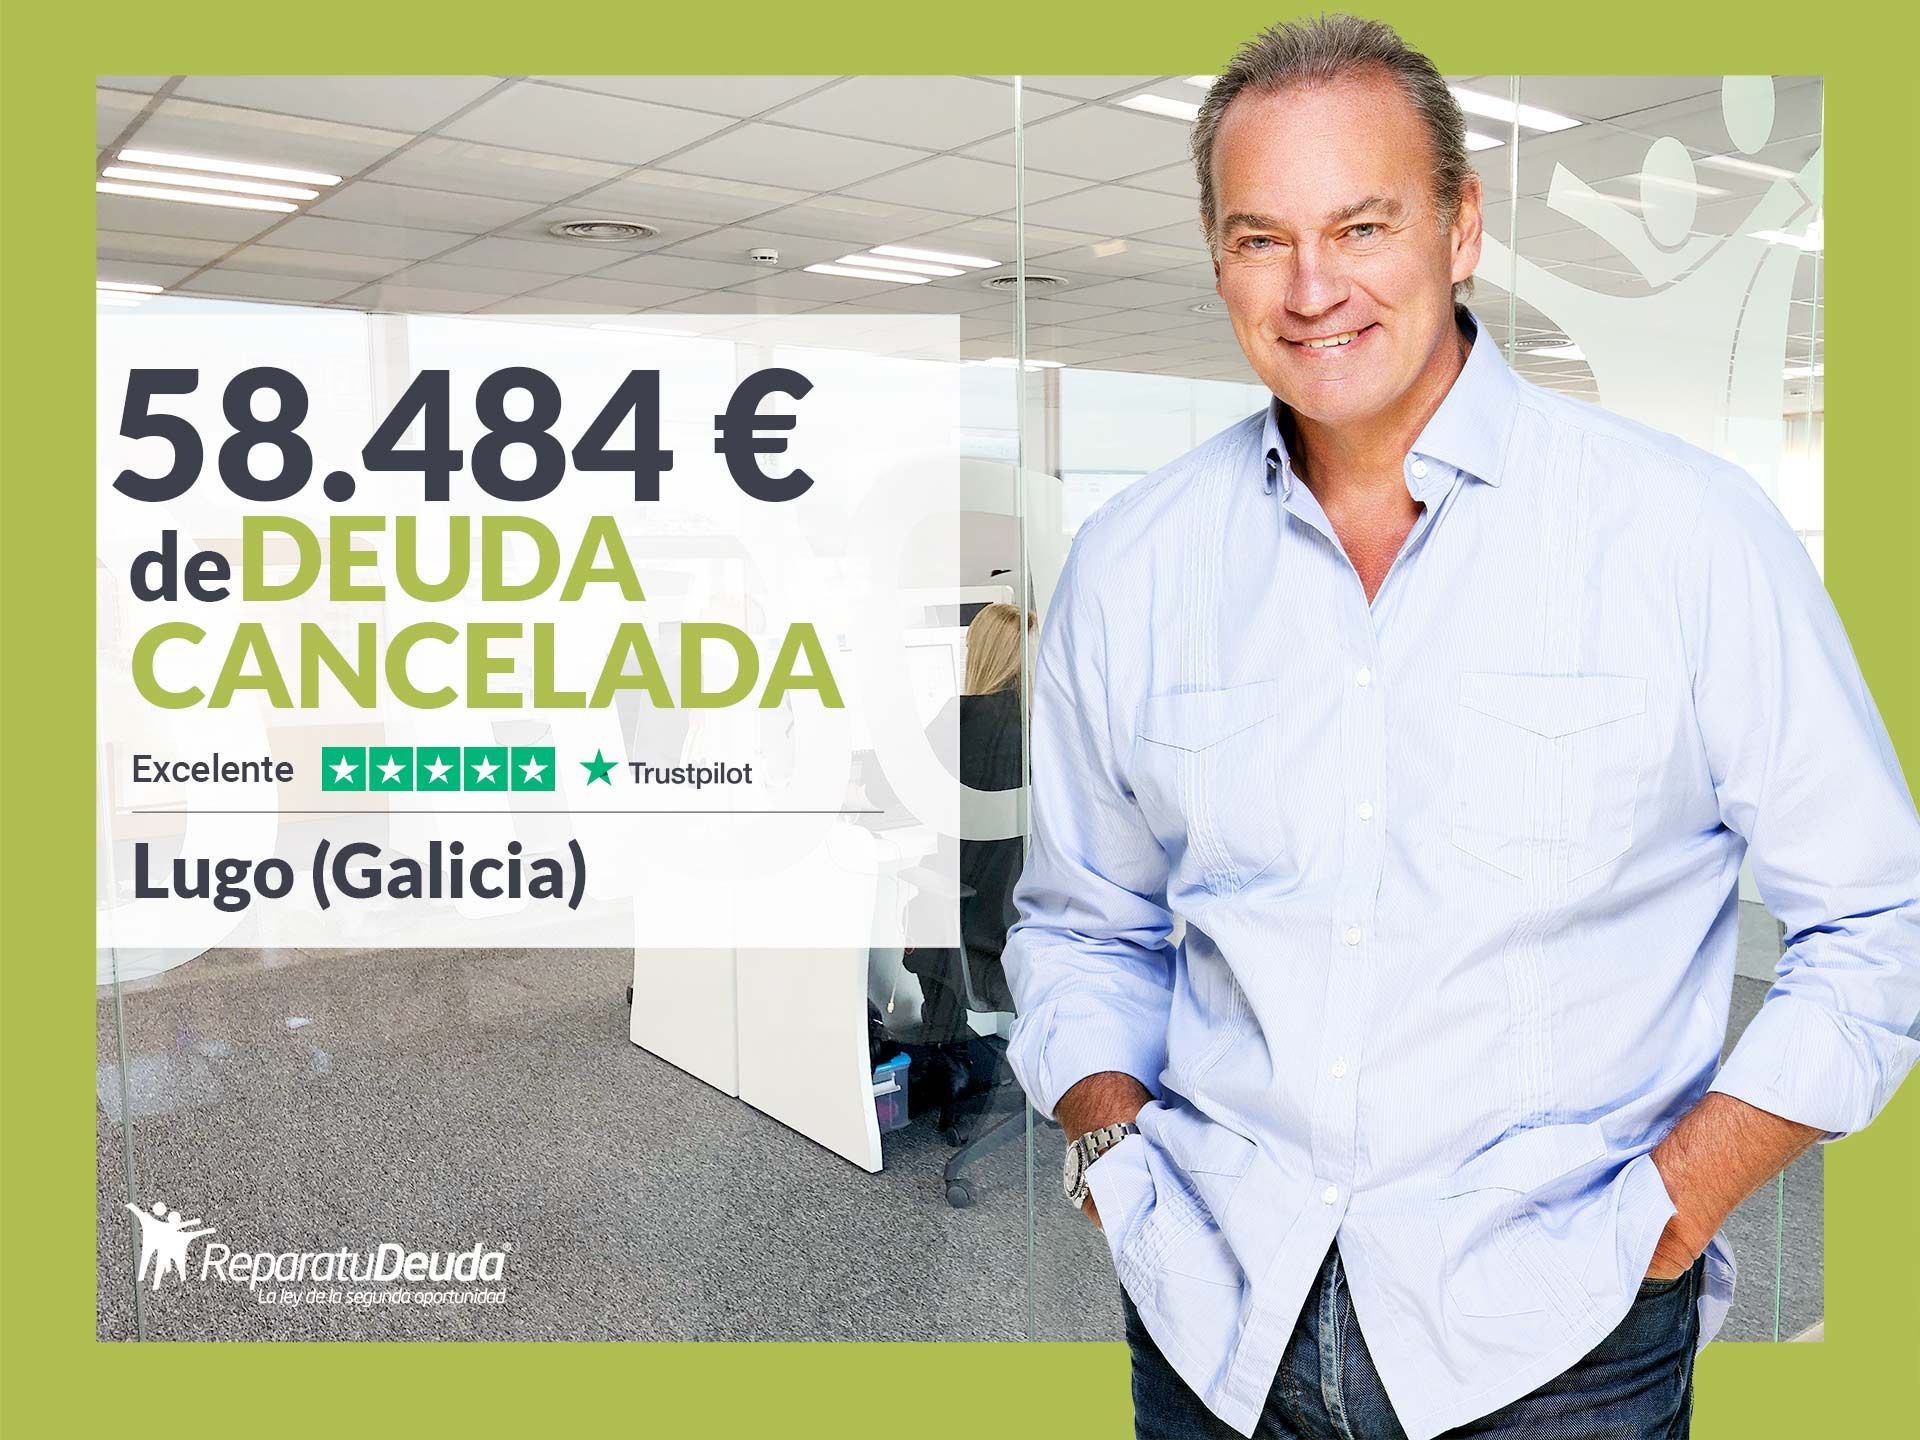 Repara tu Deuda Abogados cancela 58.484? en Lugo (Galicia) con la Ley de la Segunda Oportunidad